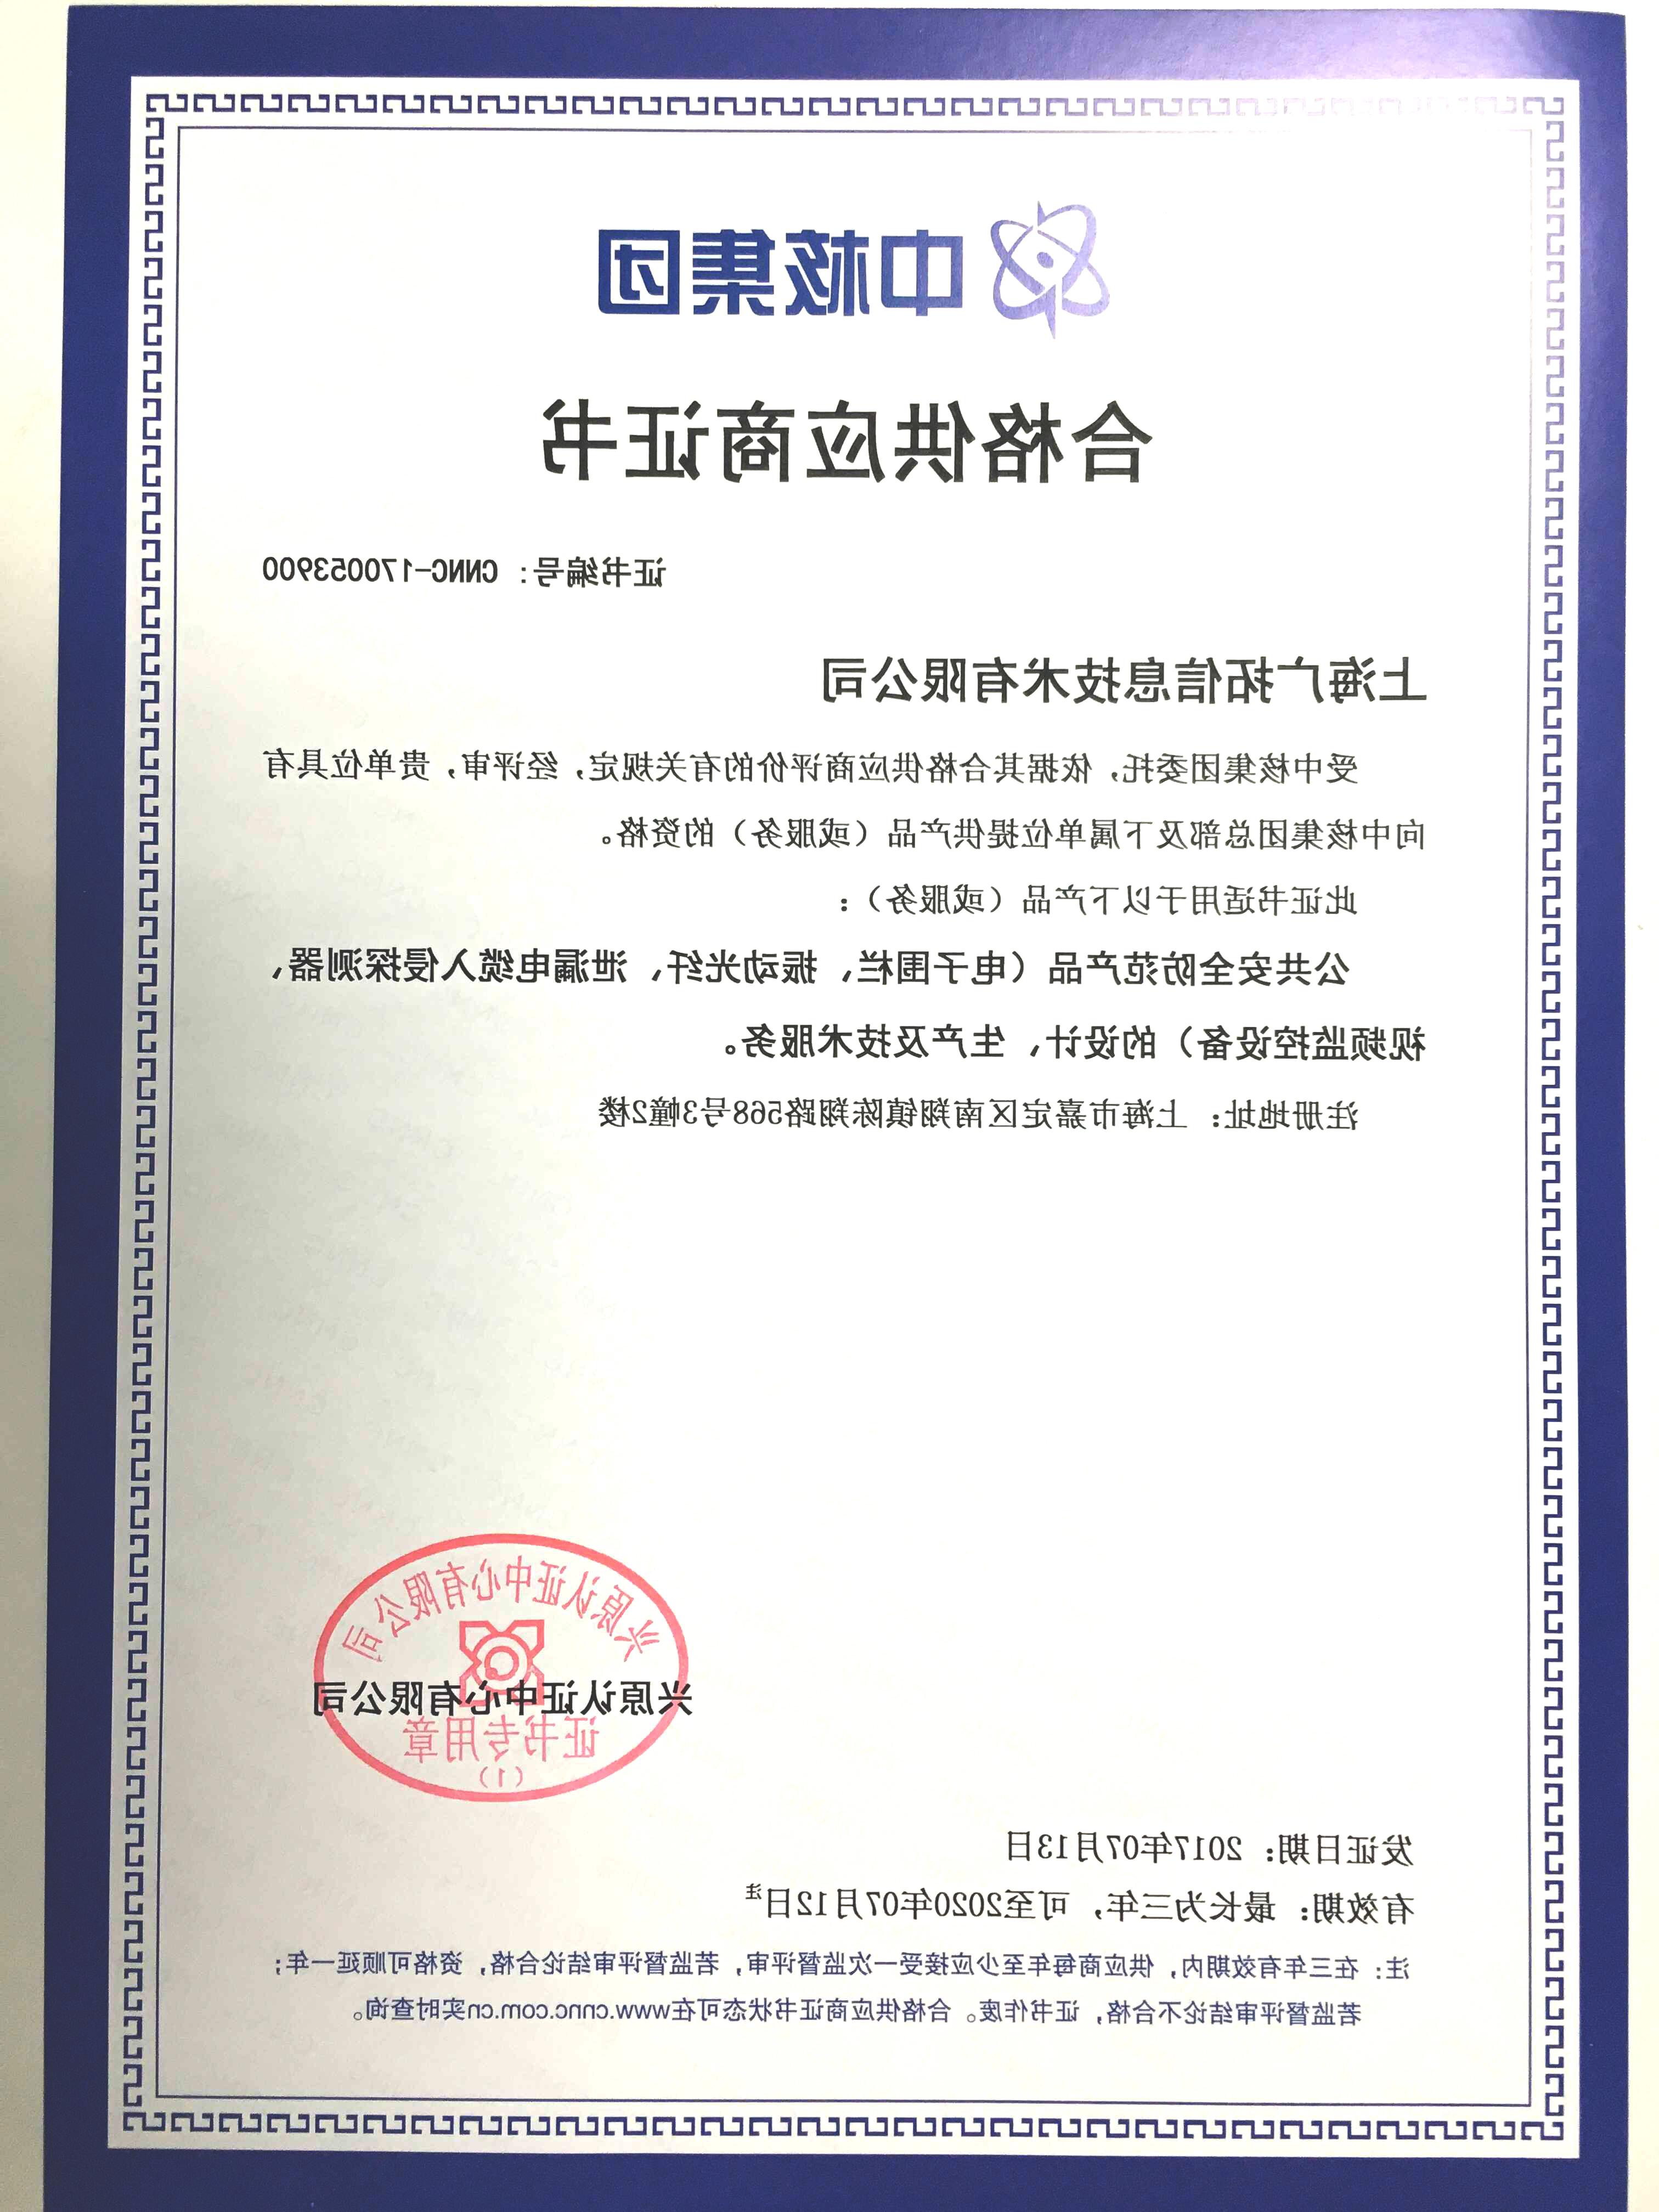 2017年合格供应商证书